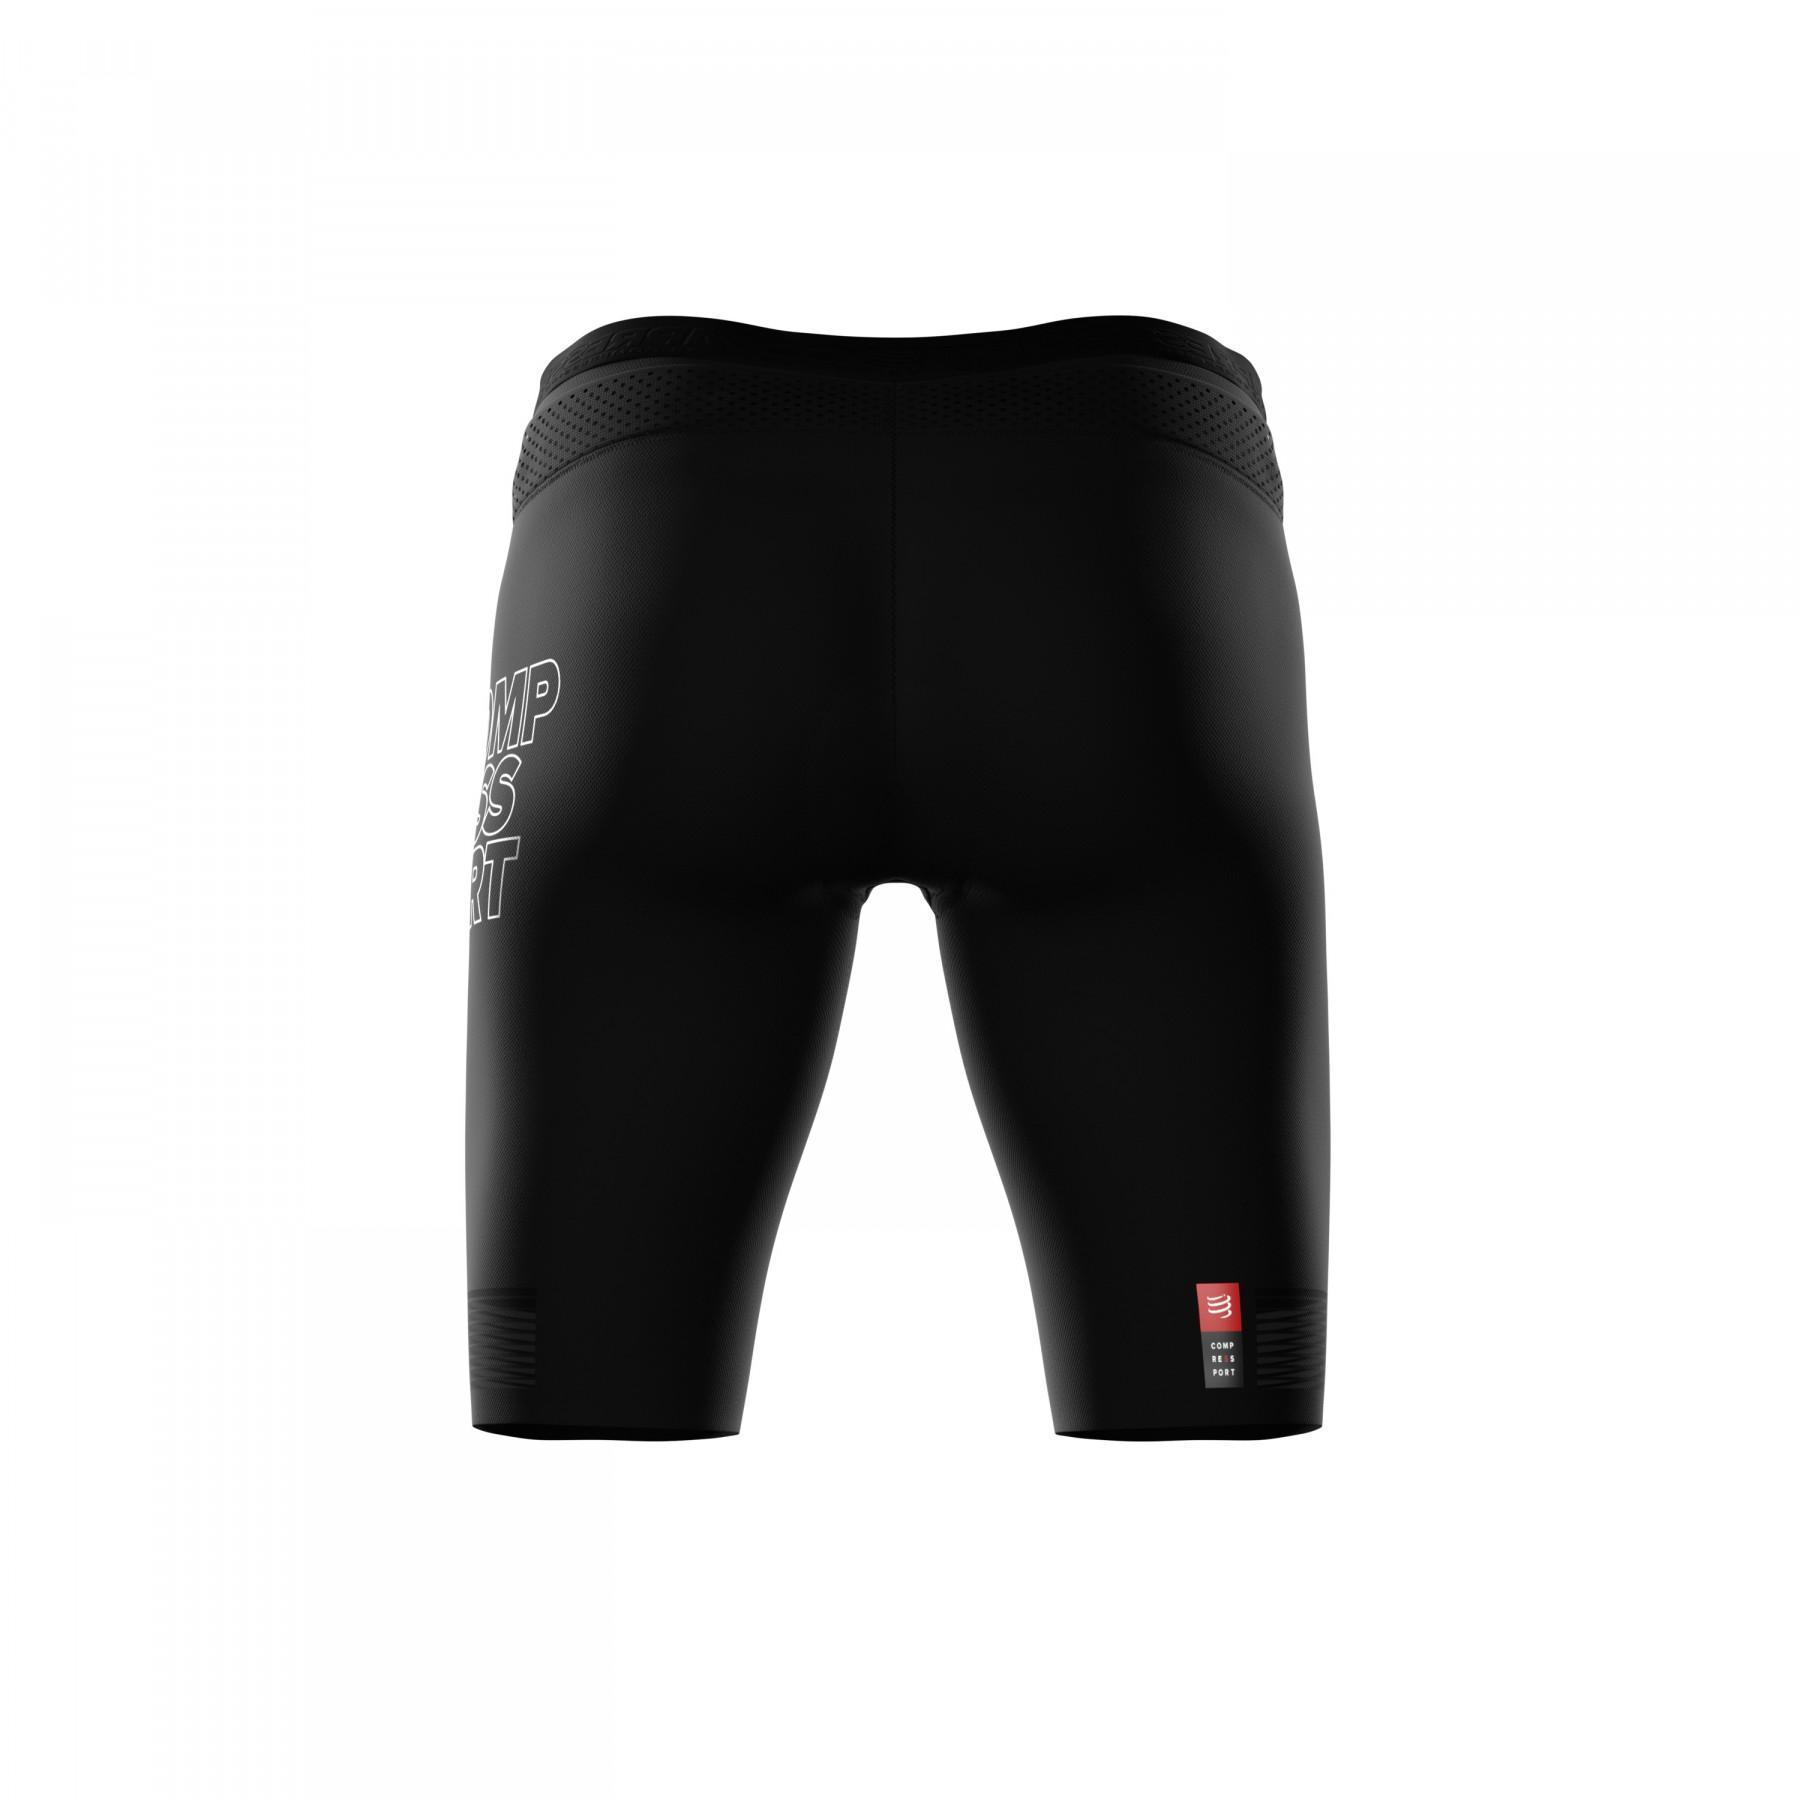 Pantalones cortos de compresión para mujer Compressport Under Control Triathlon